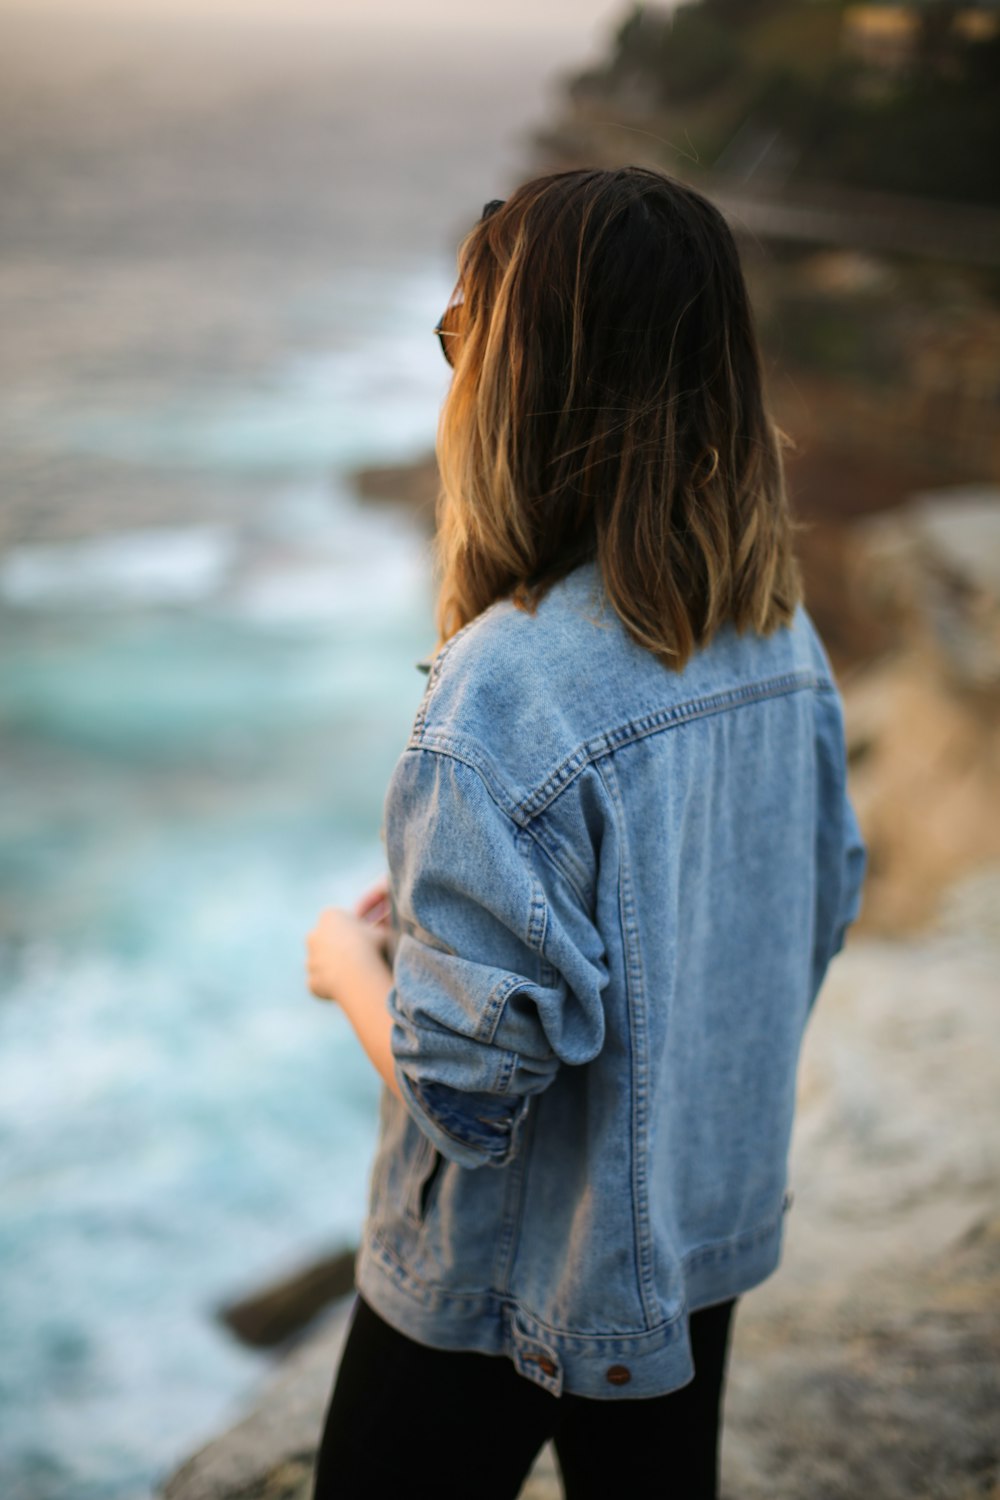 mulher na jaqueta jeans azul olhando para o mar